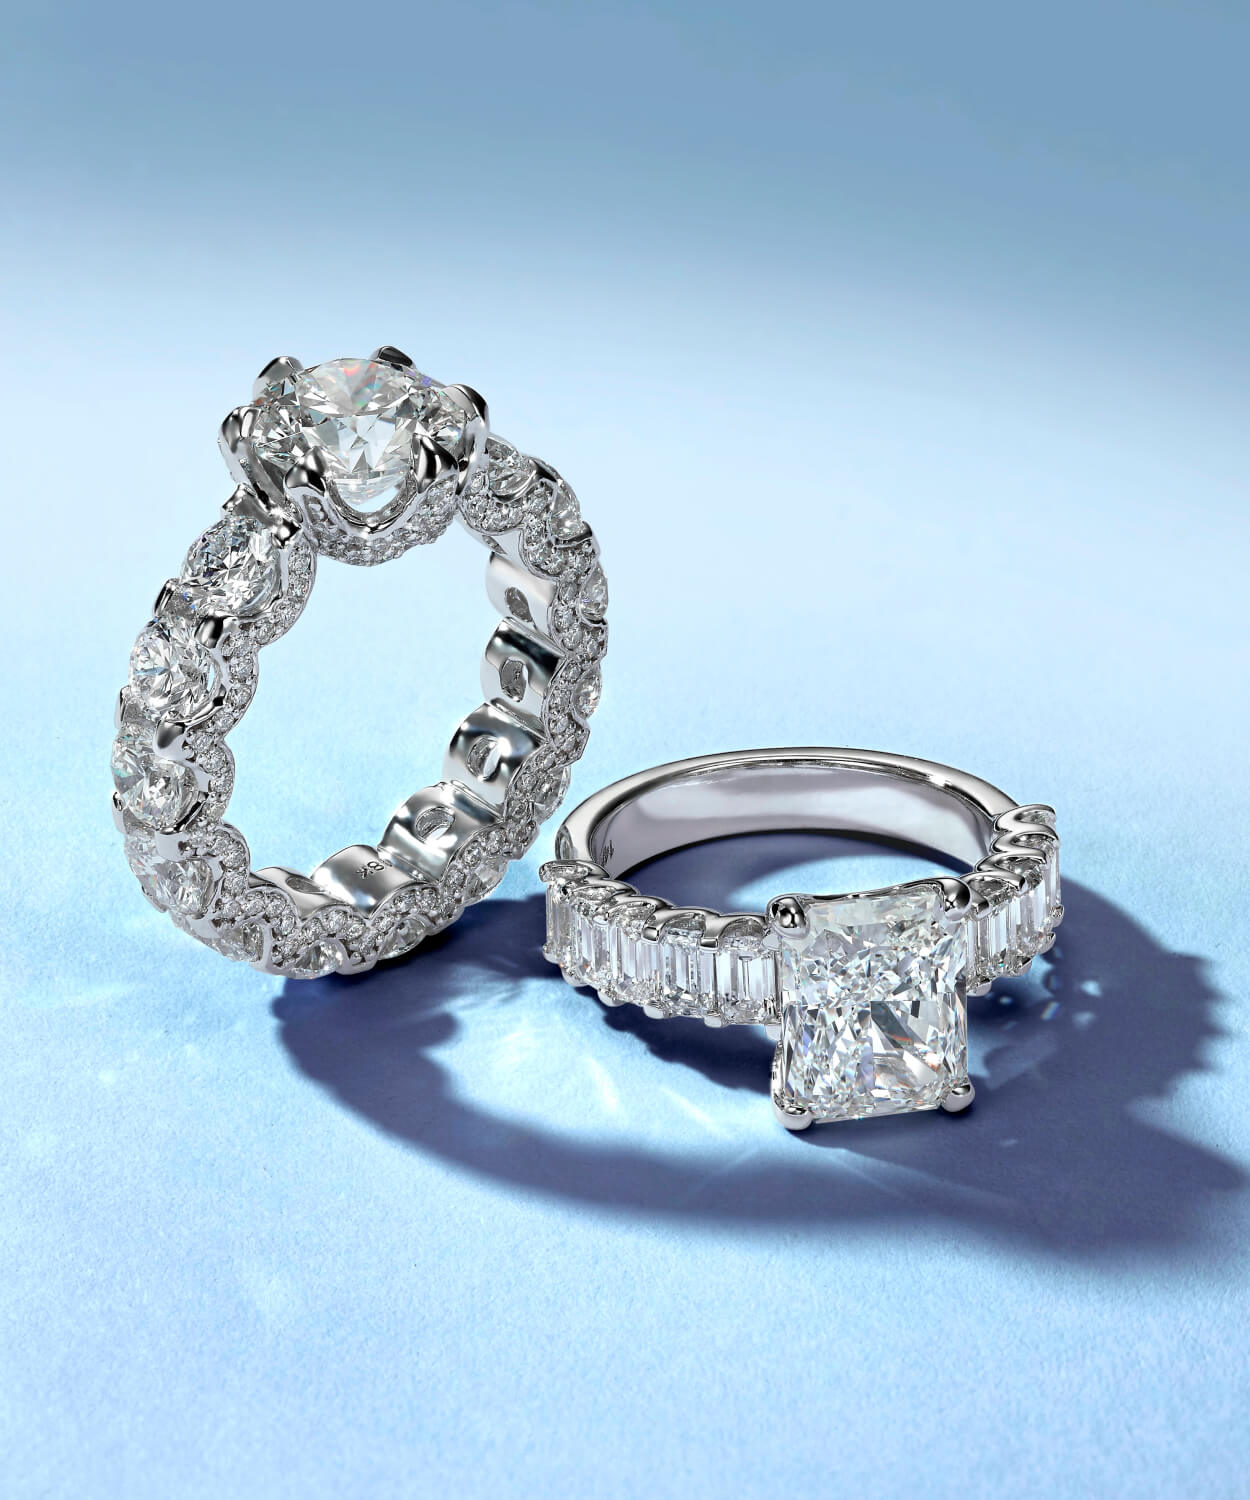 lab grown diamond rings